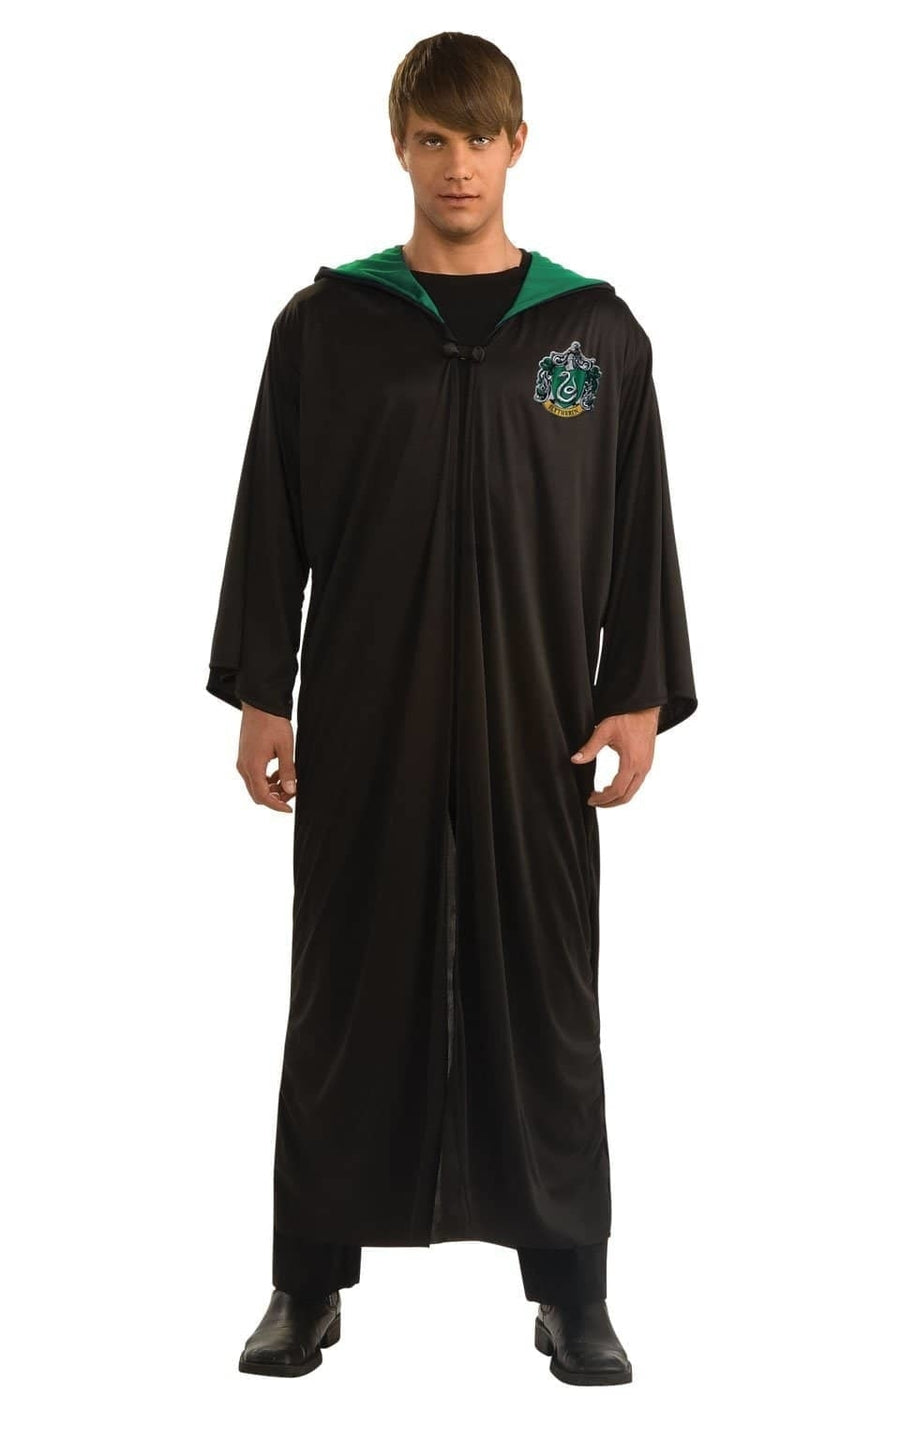 Slytherin Robe Harry Potter Adult_1